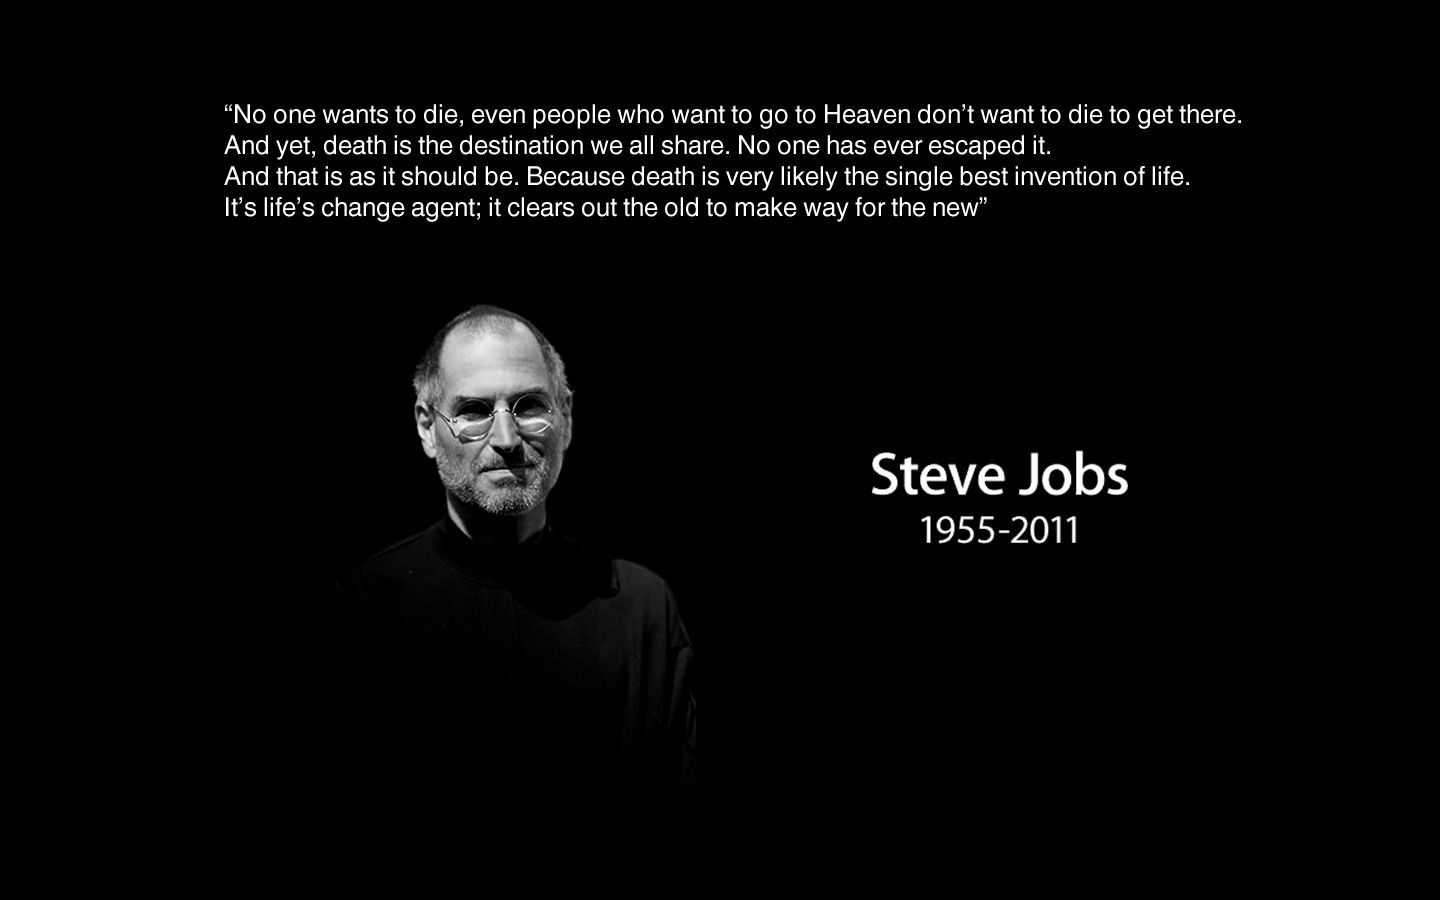 Steve Jobs Wallpaper. Steve Jobs Wallpaper, Steve Jobs iPhone Wallpaper and Steve Jobs Quotes Wallpaper